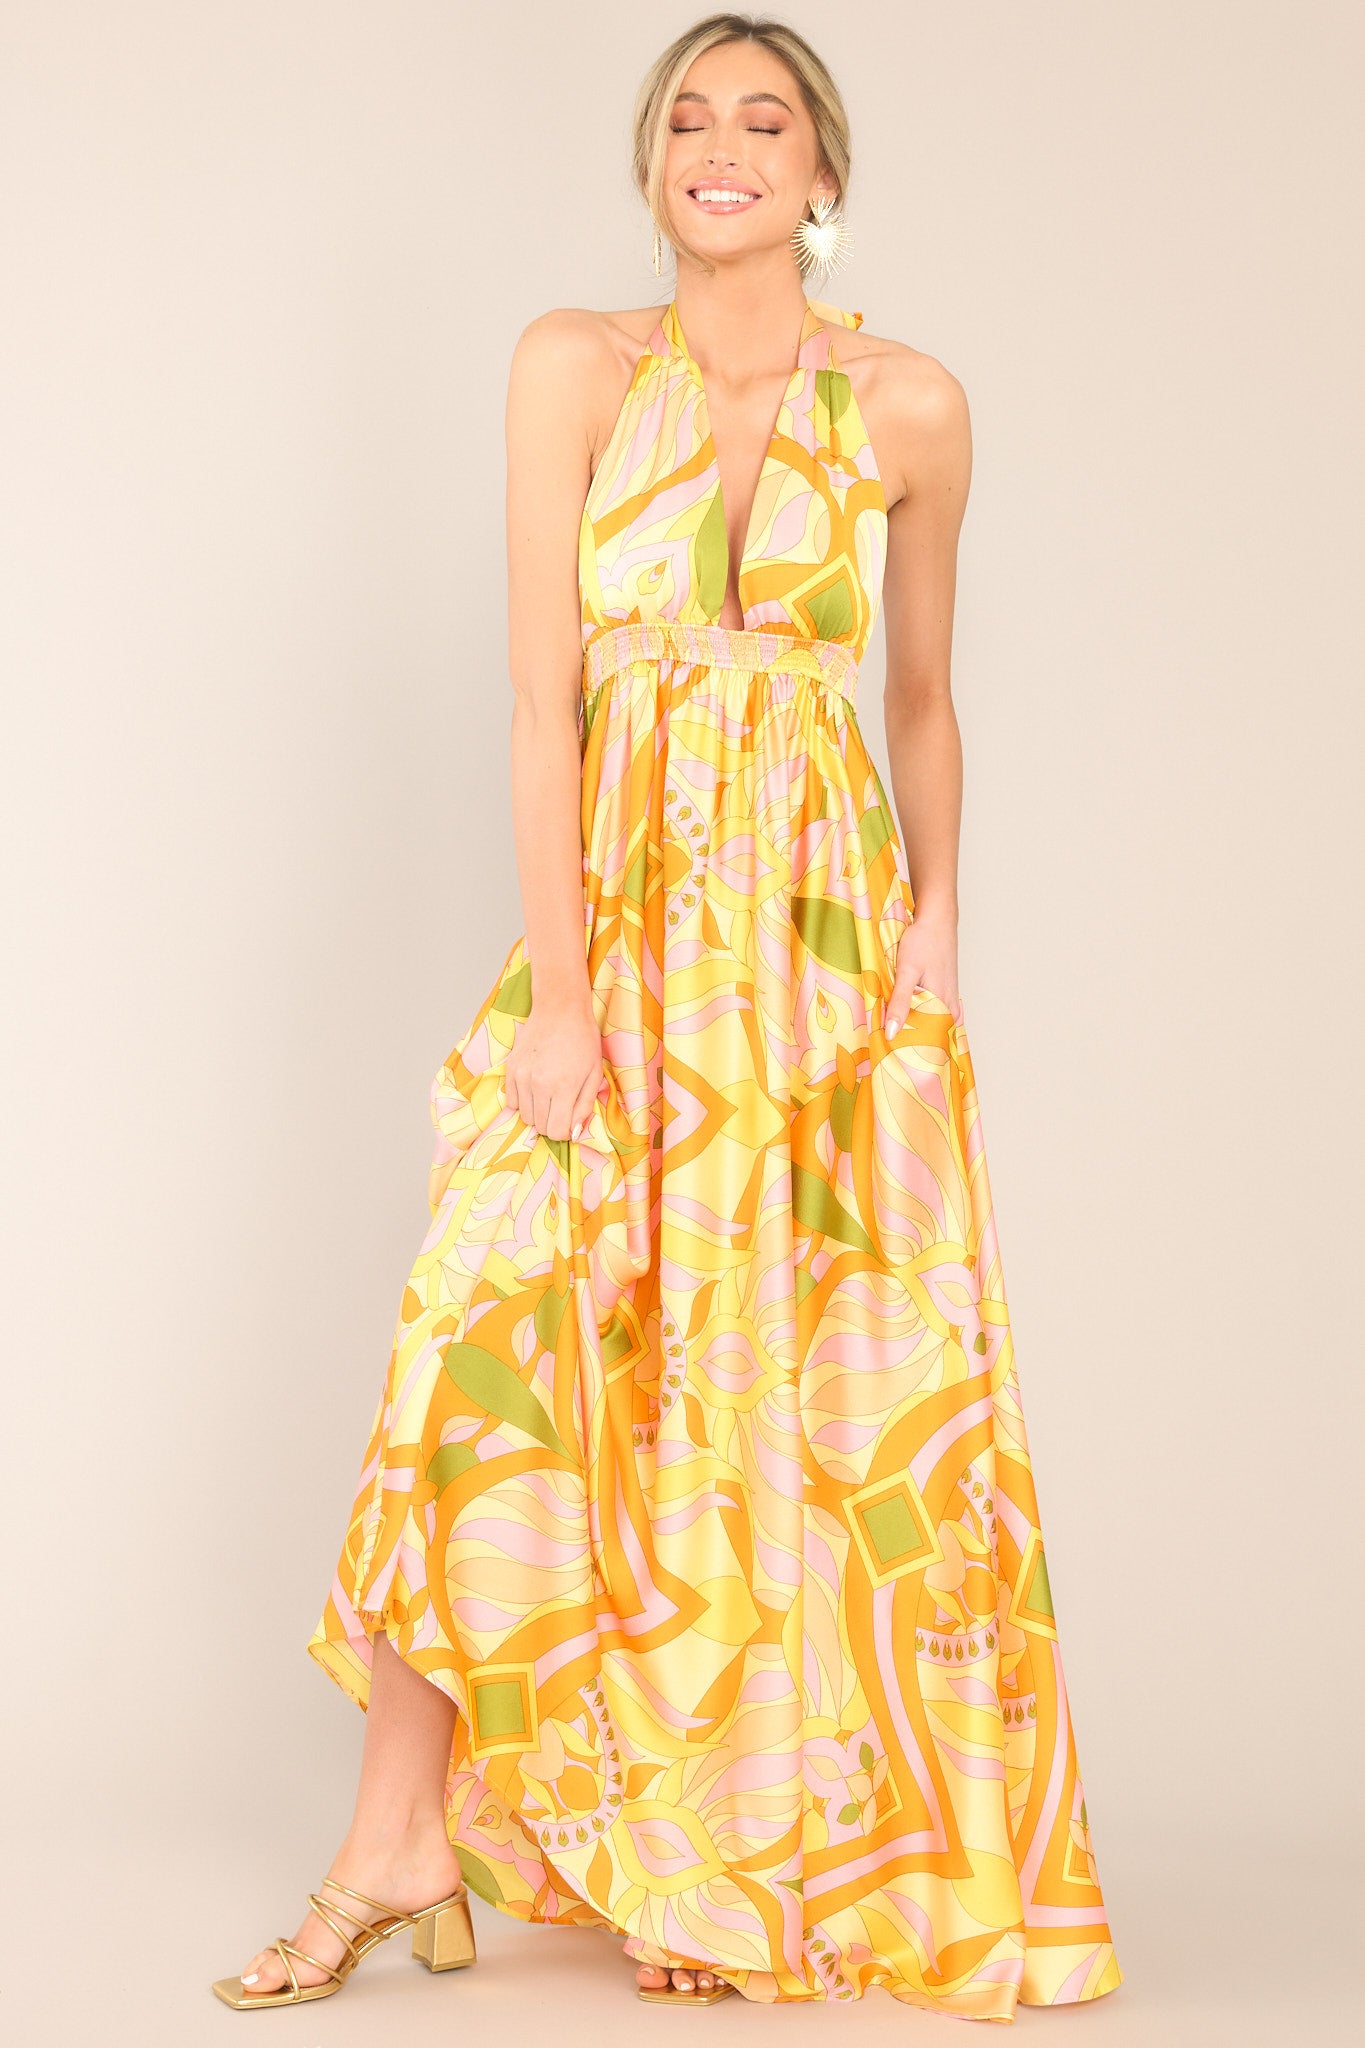 Citrus Yellow Maxi Dress - All Dresses